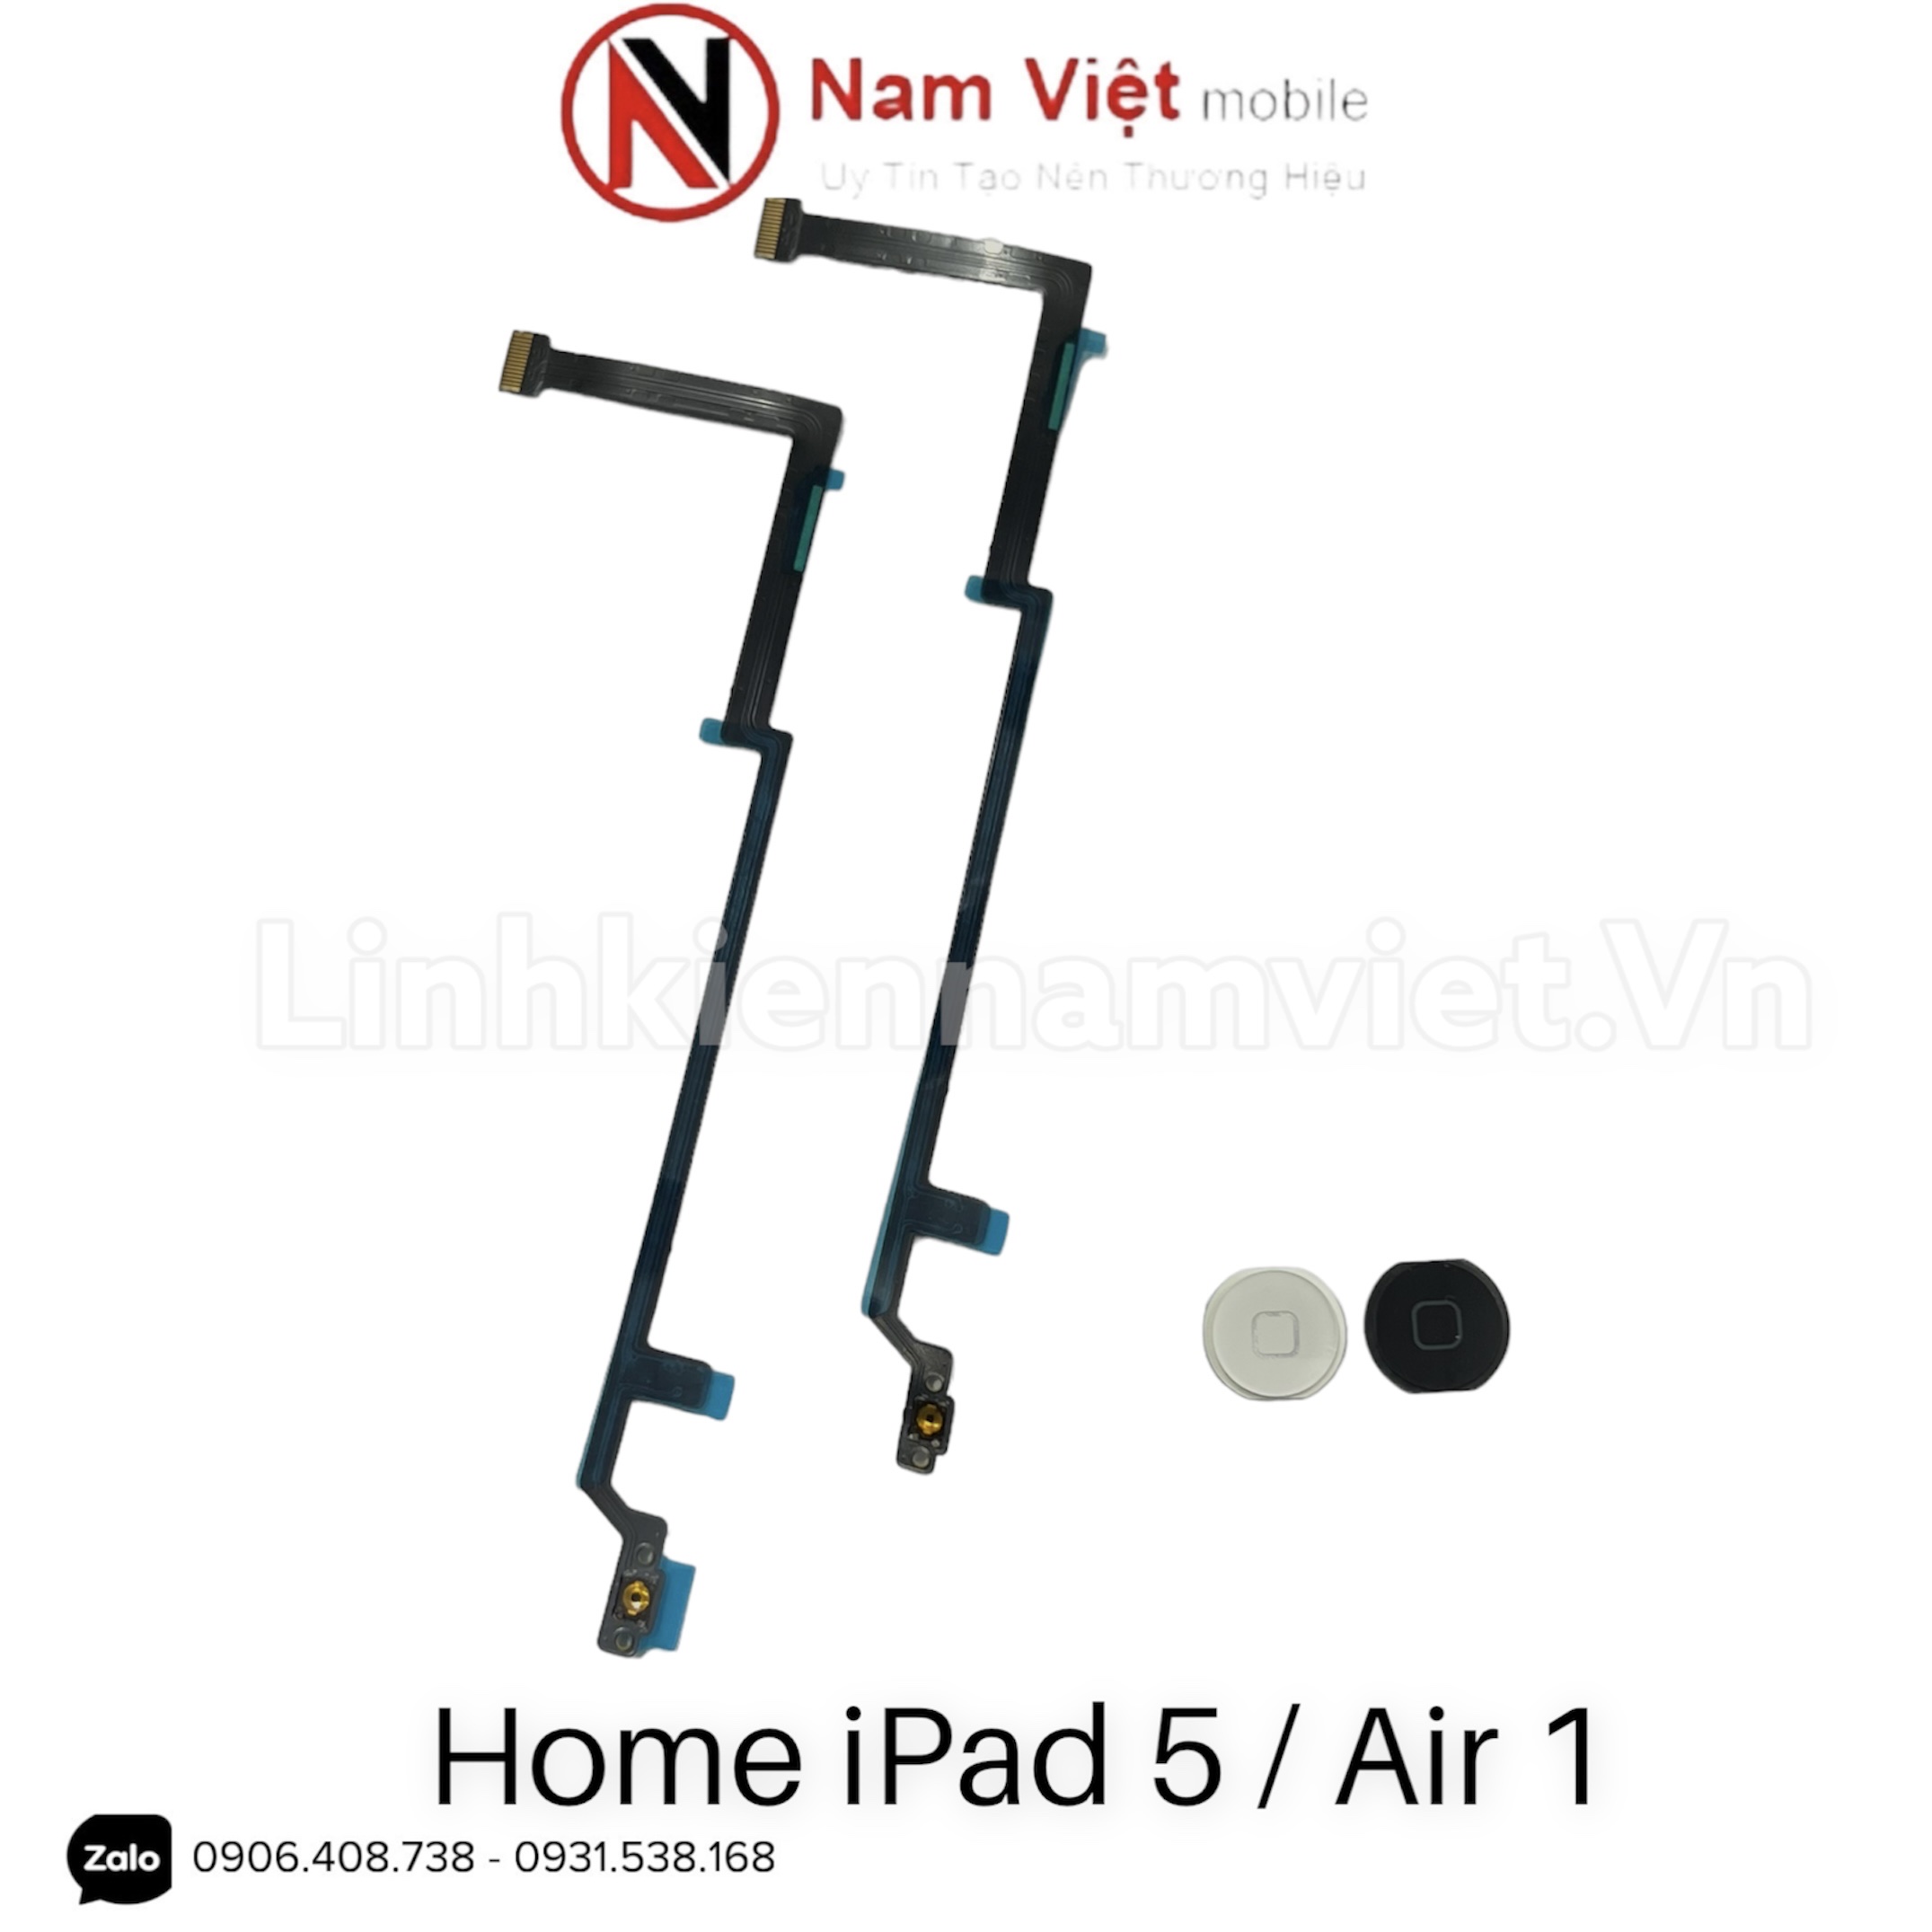 Home iPad 5 / Air 1